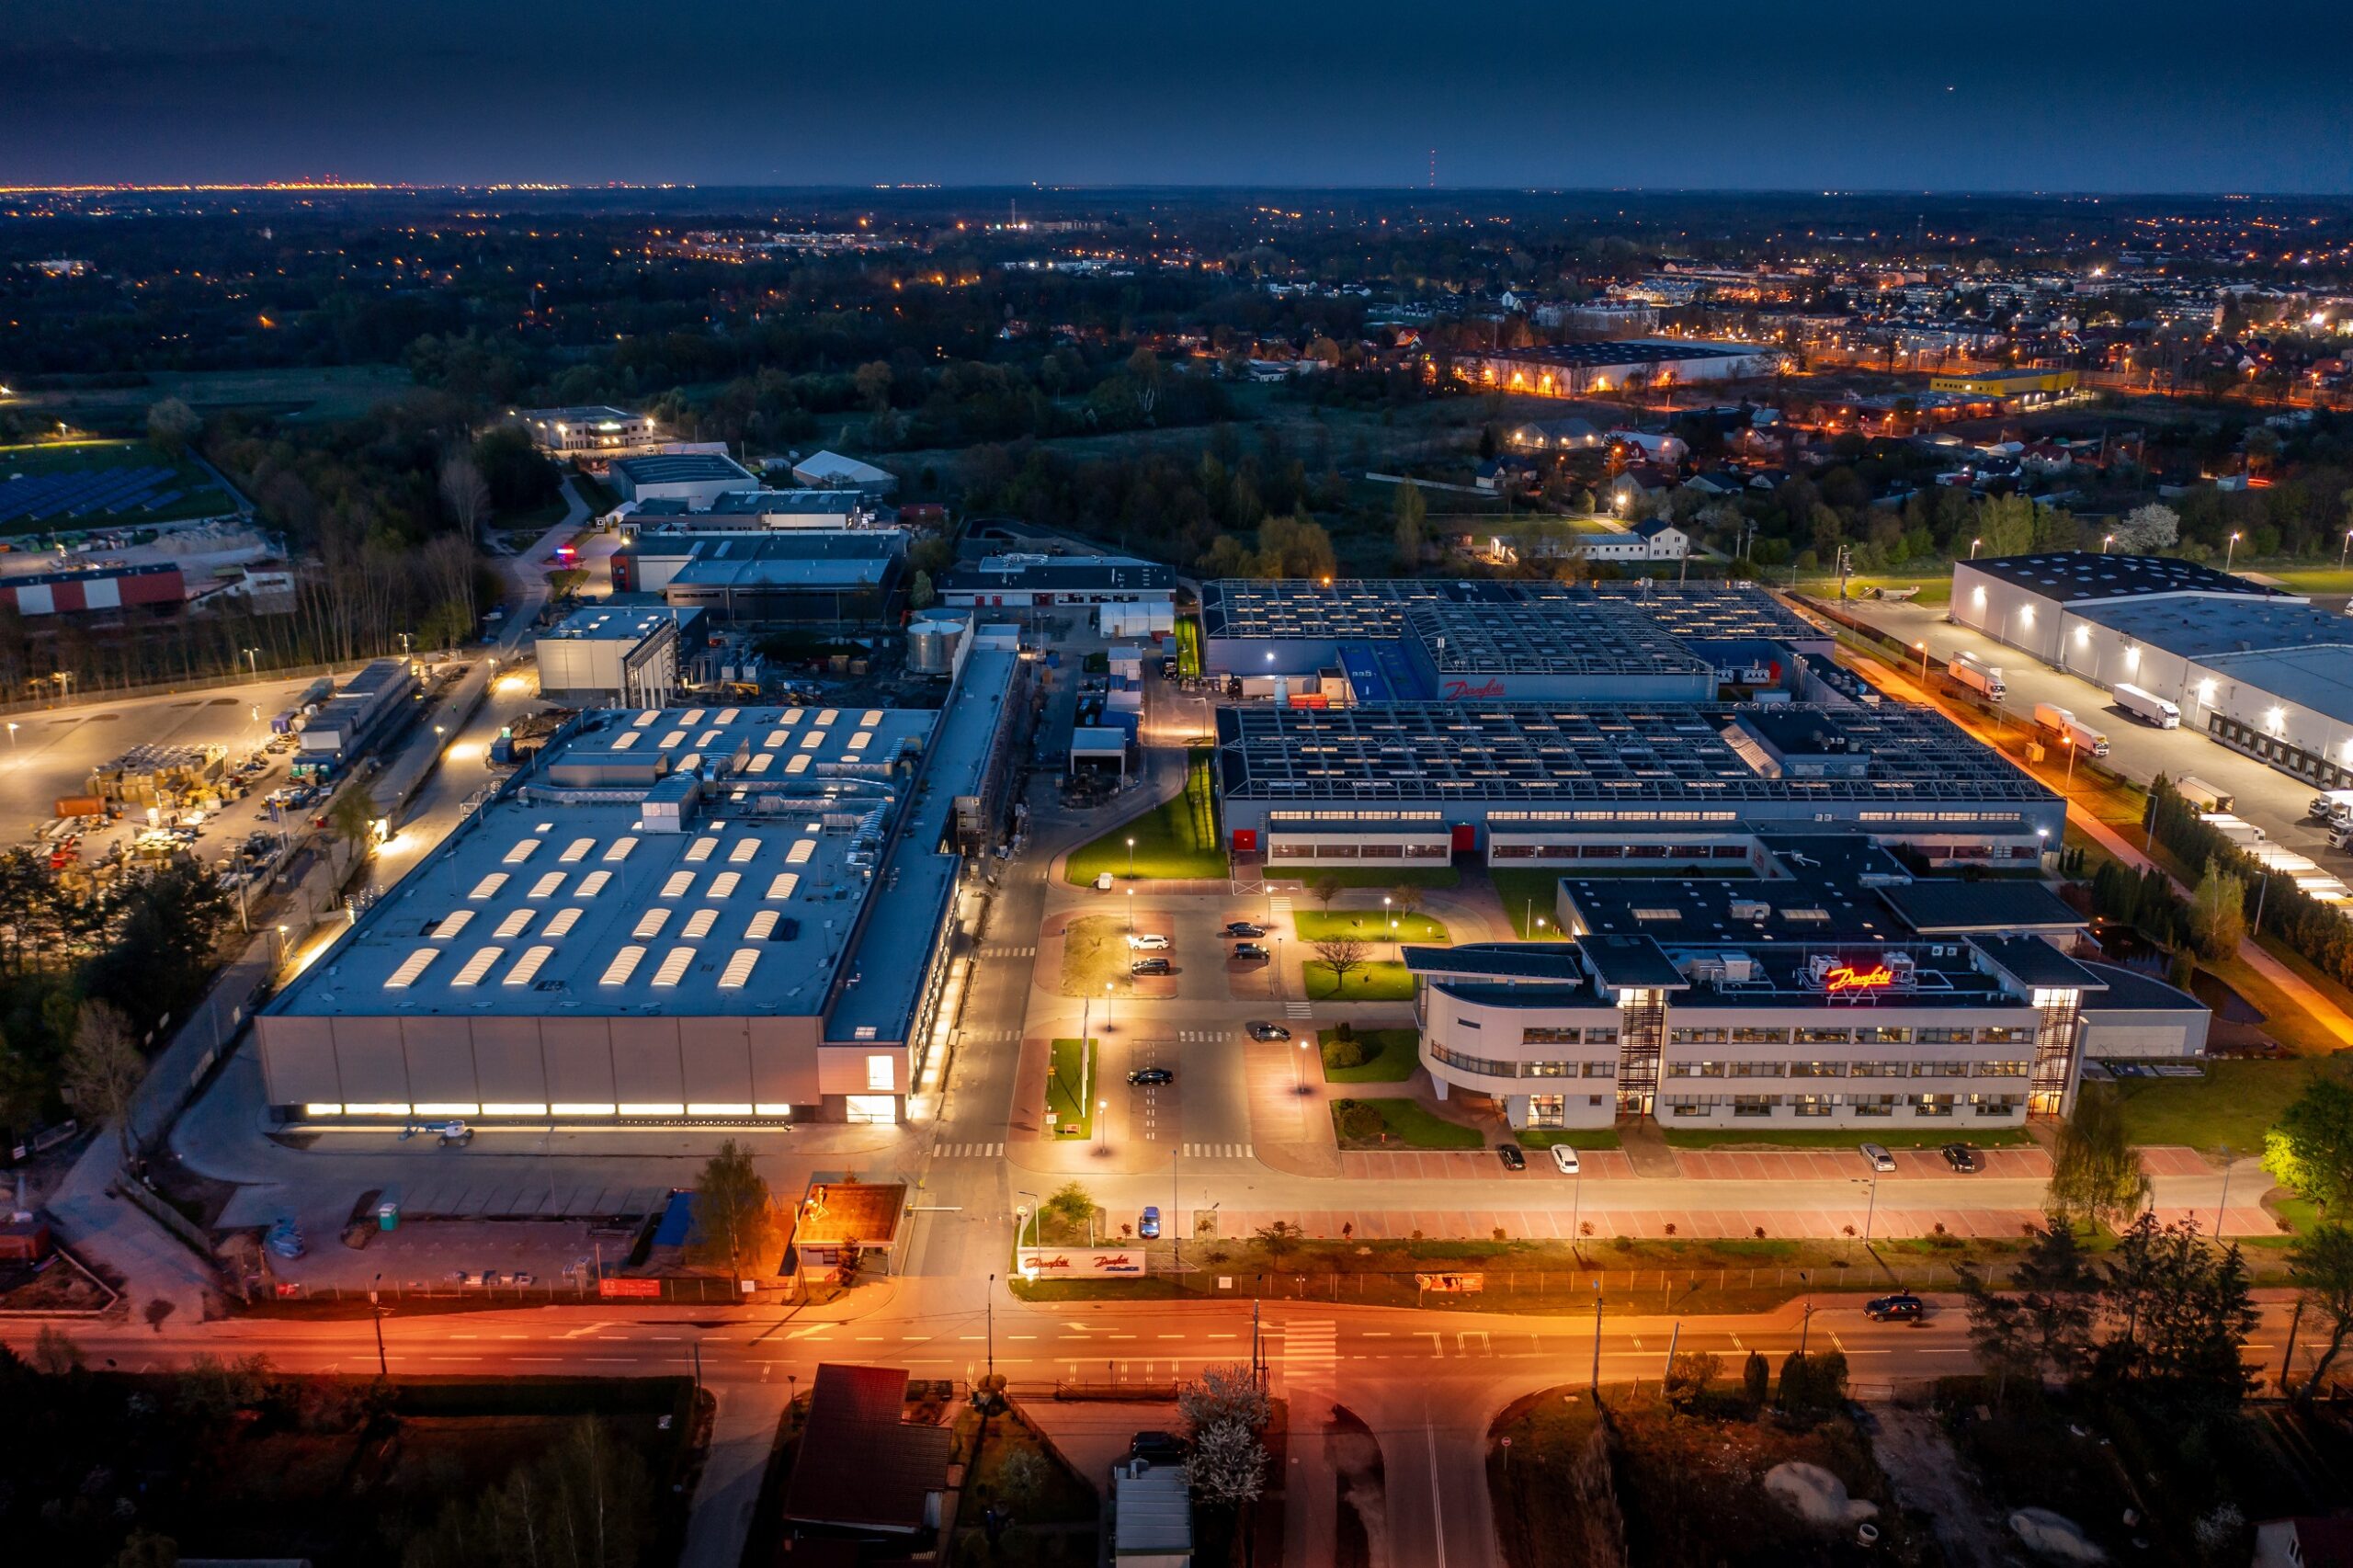 Pierwsza zeroemisyjna fabryka firmy Danfoss powstała w Polsce. Panattoniwspiera zielony rozwój przemysłu